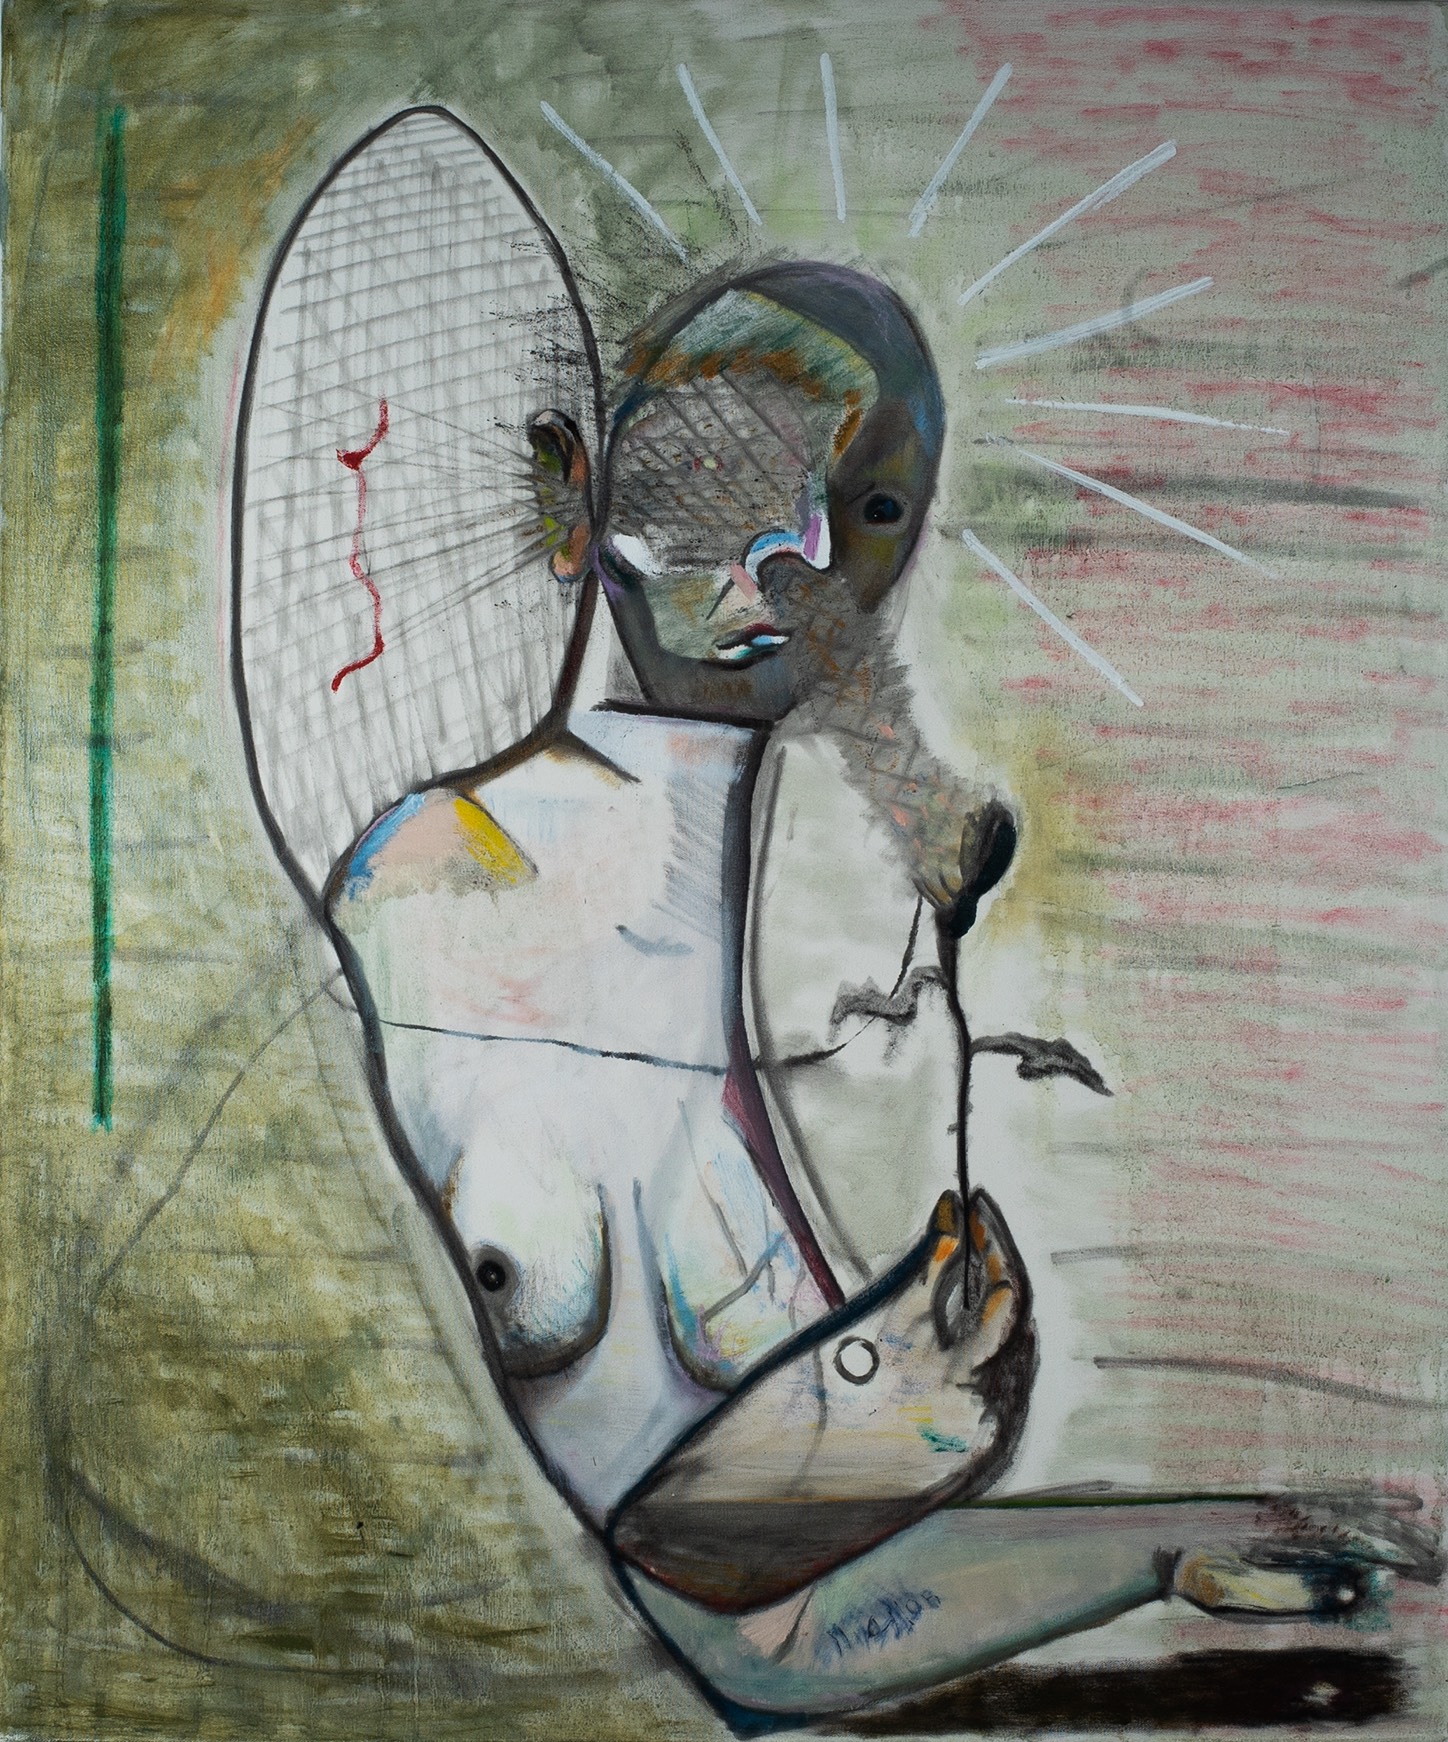 Rodrigo Echeverría, Oler la flor, escuchar el color, 2020, Óleo sobre tela, 120 x 110 cm. Cortesía del artista